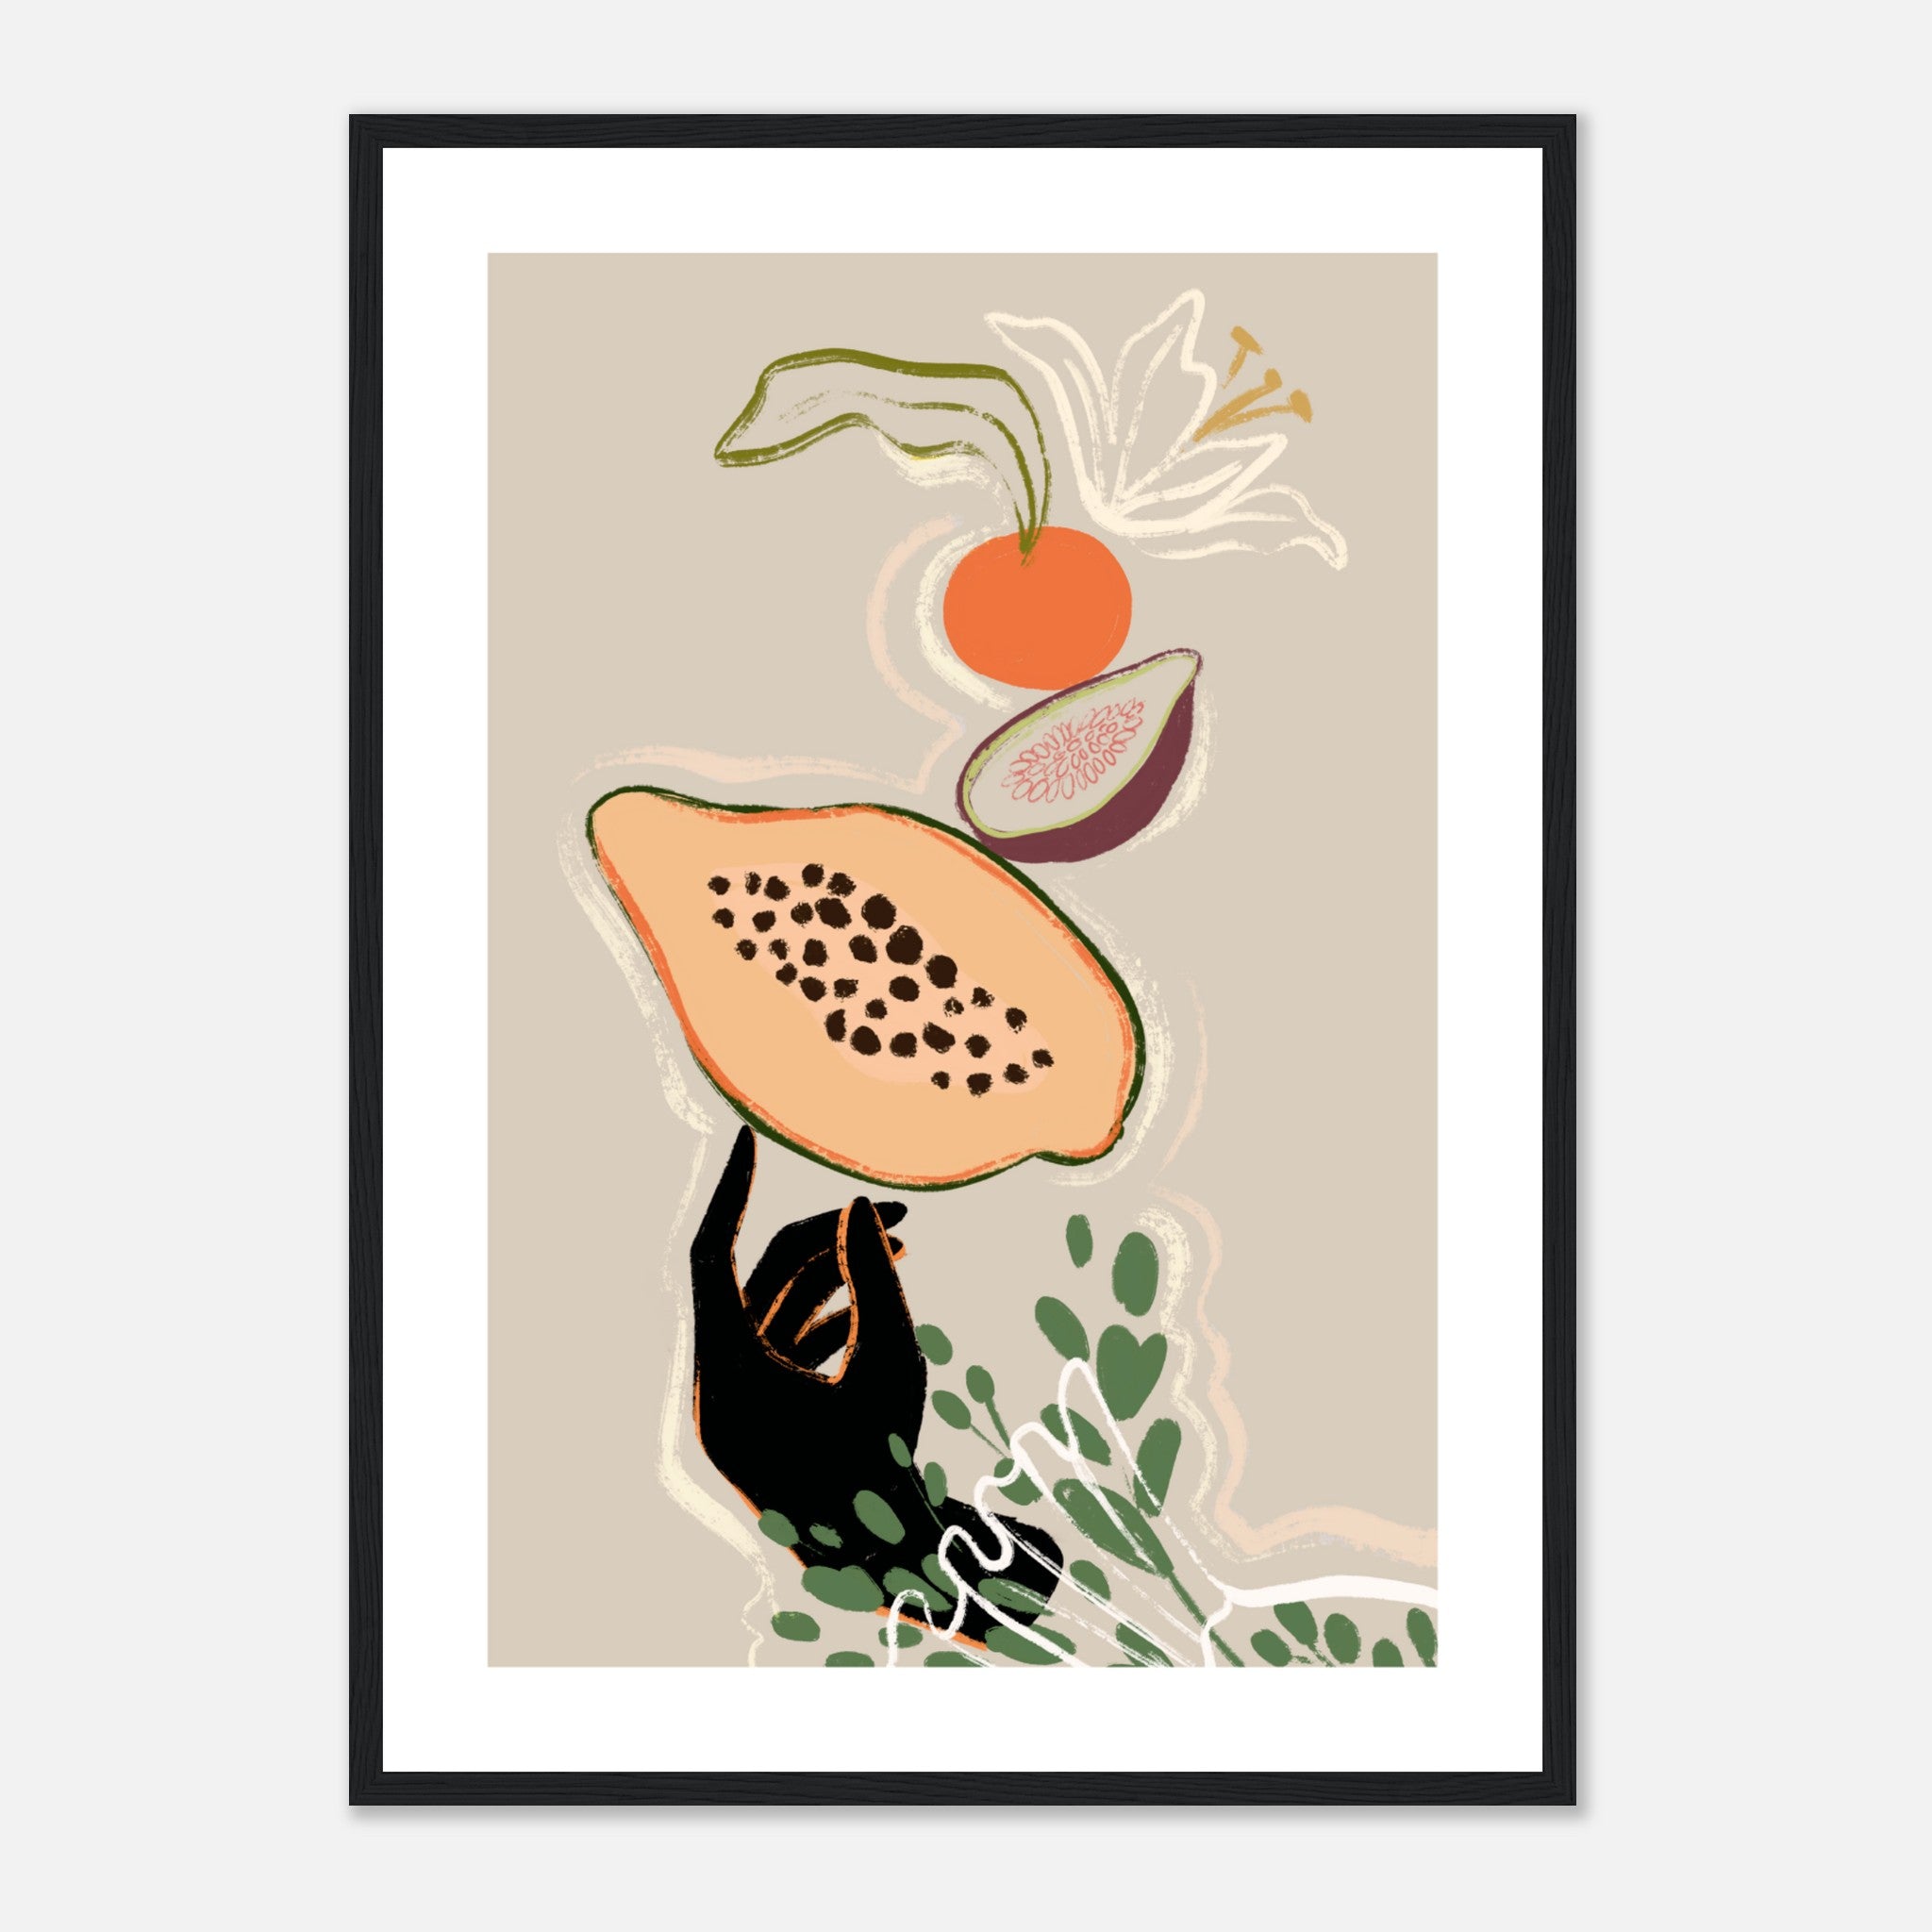 Balancing Fruits Poster